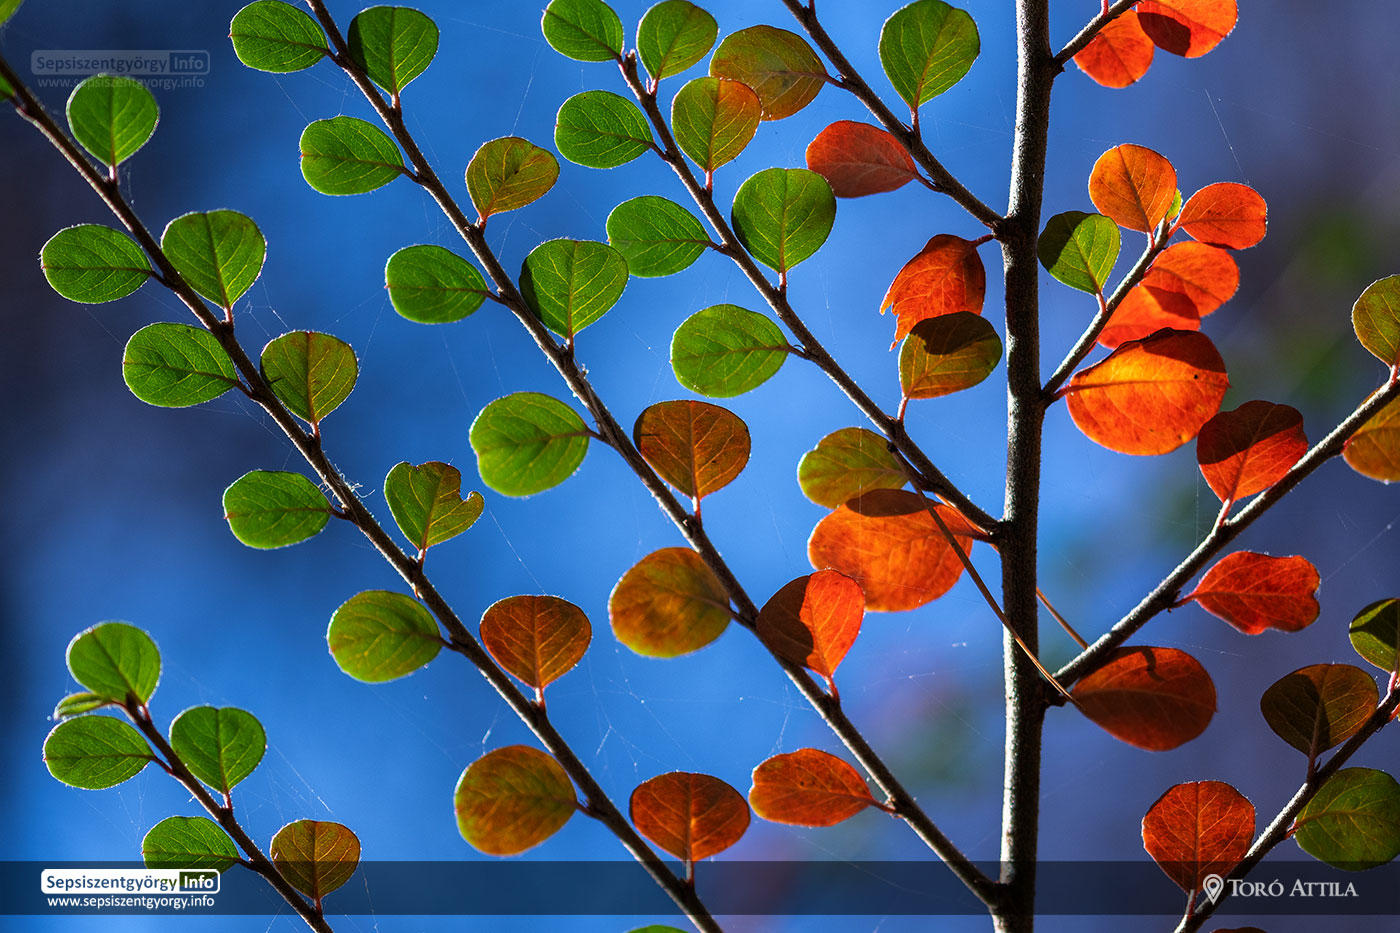 Késő őszi színvarázs a sepsiszentgyörgyi Erzsébet parkban